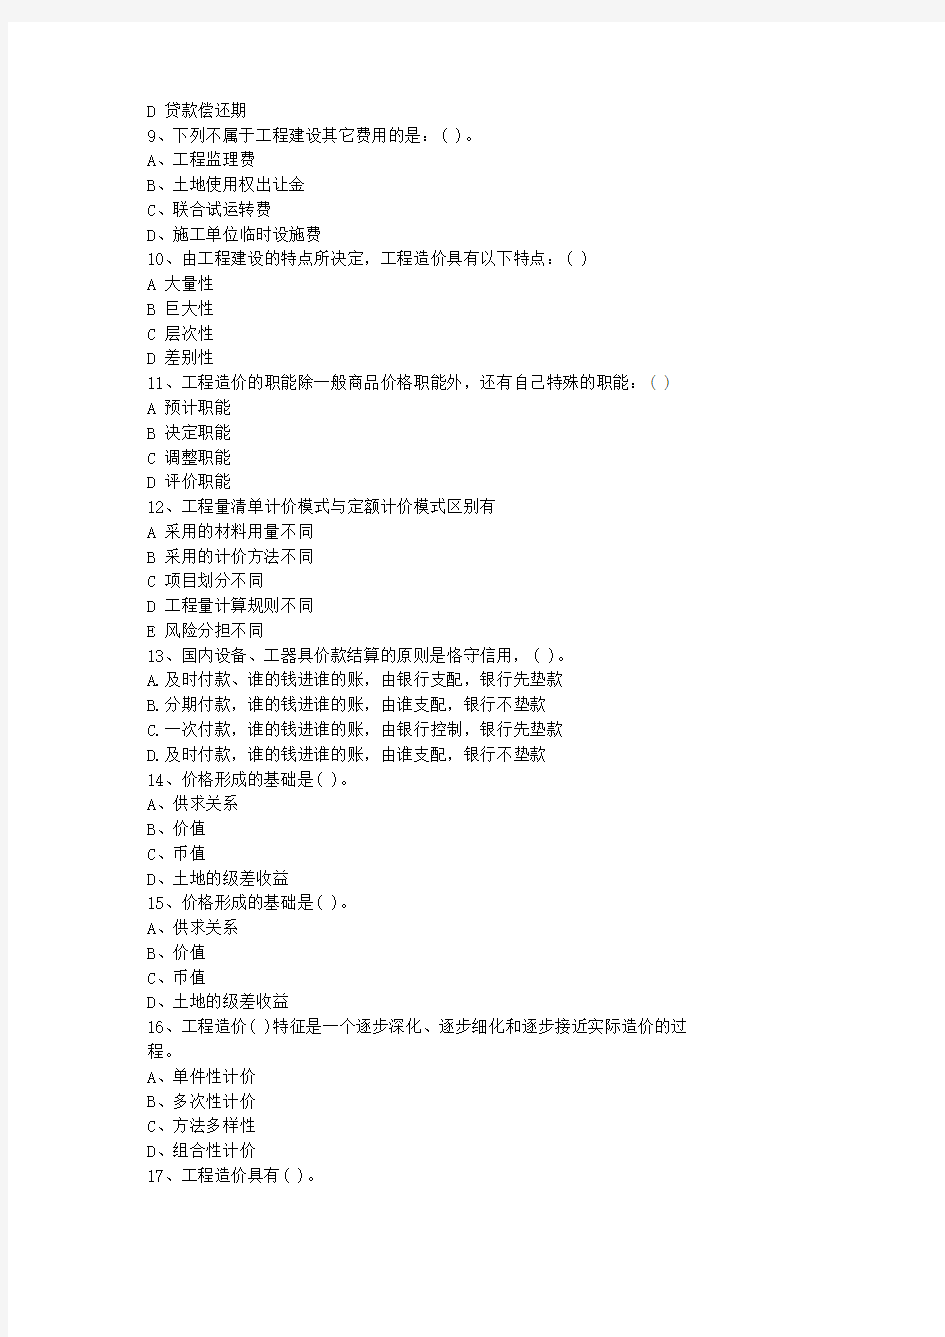 2013青海省造价员考试试题及答案全(打印版)考试技巧与口诀